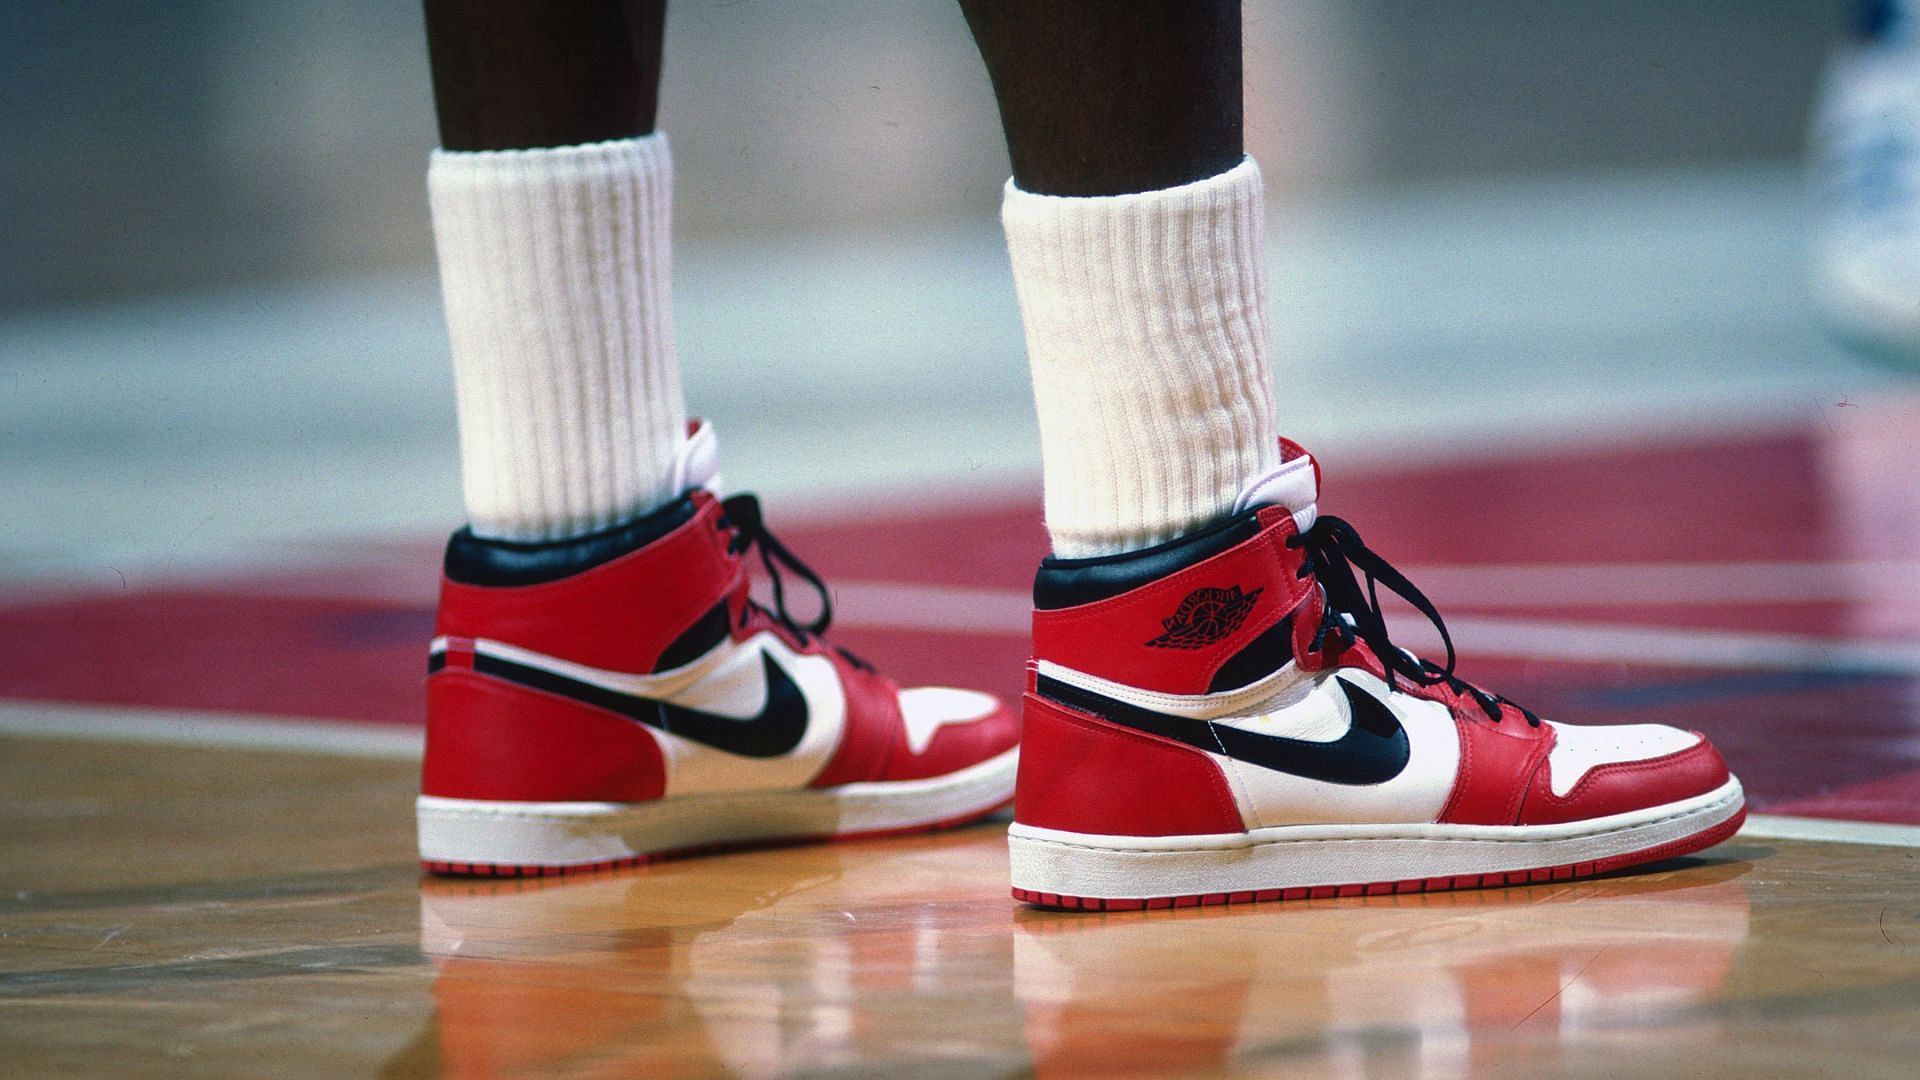 Michael Jordan debuting his Air Jordan shoes